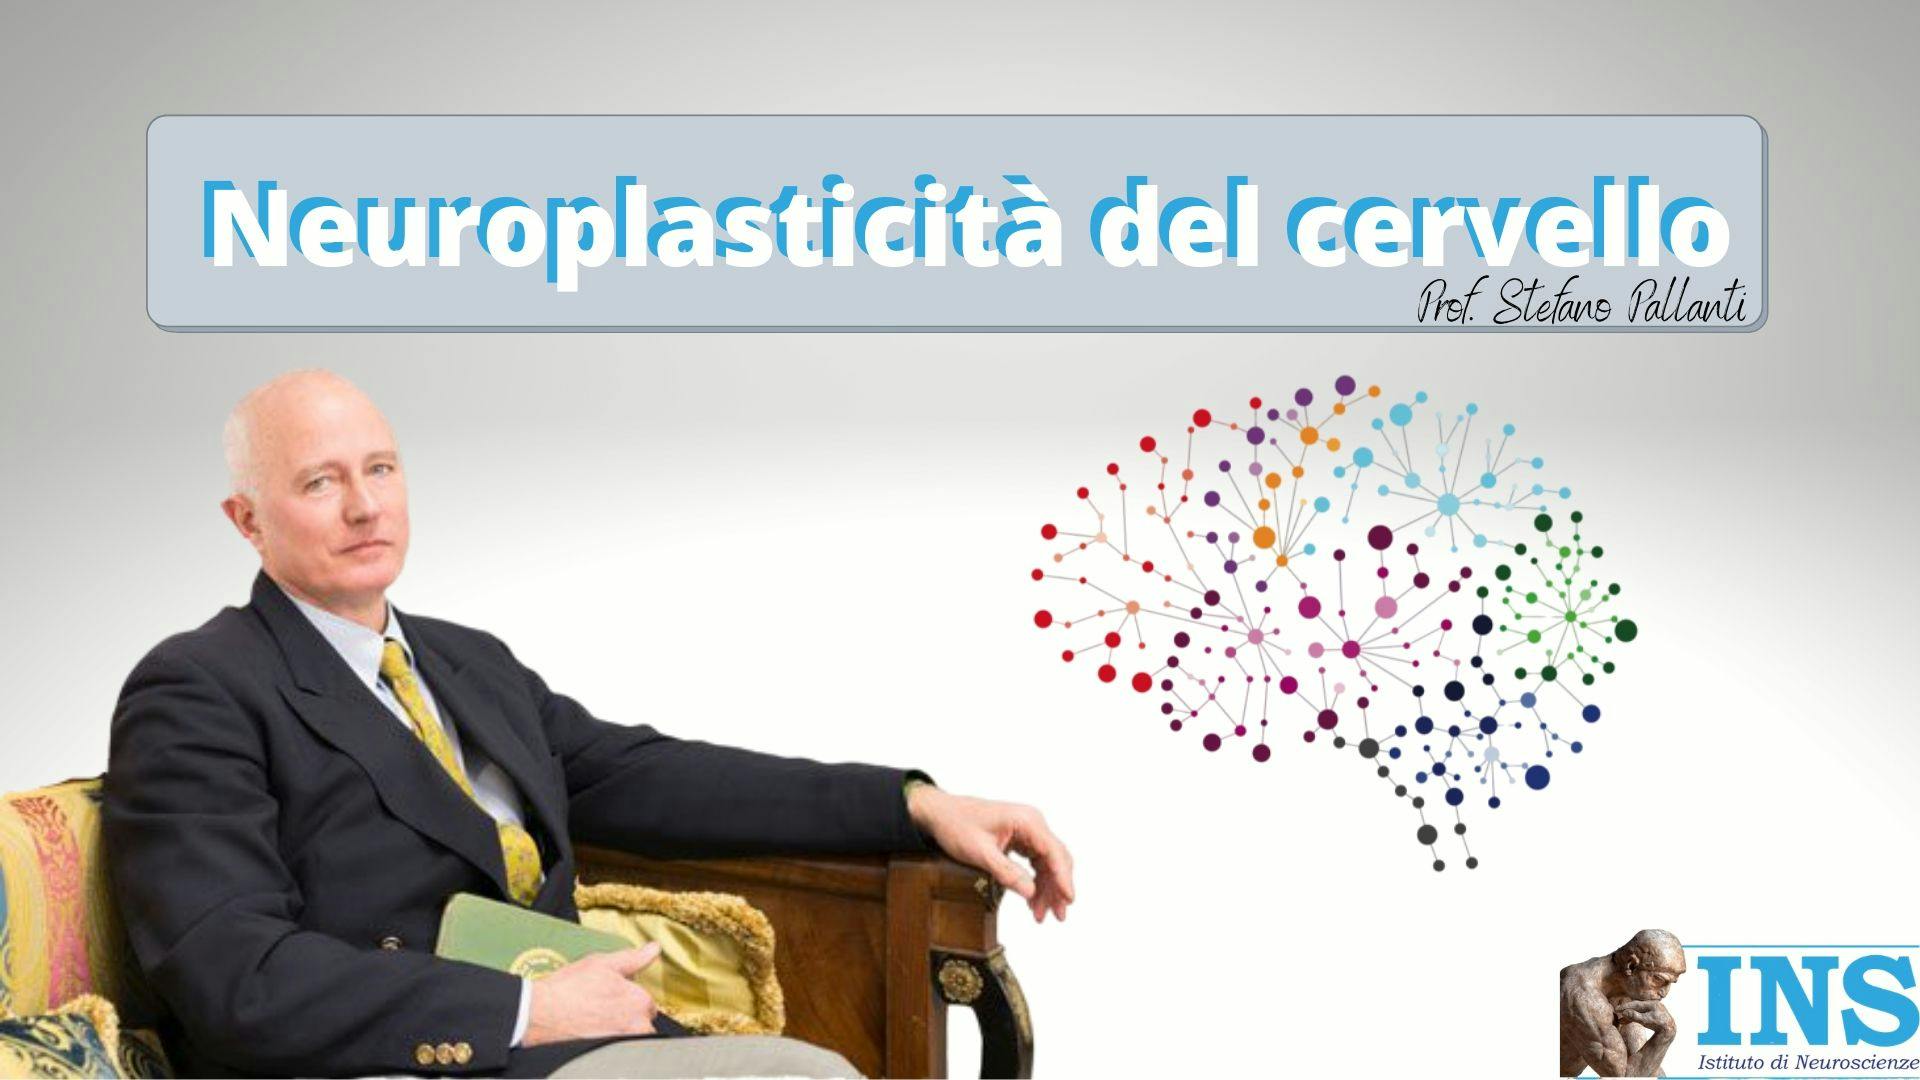 La copertina del video "Neuroplasticità del cervello" di Stefano Pallanti